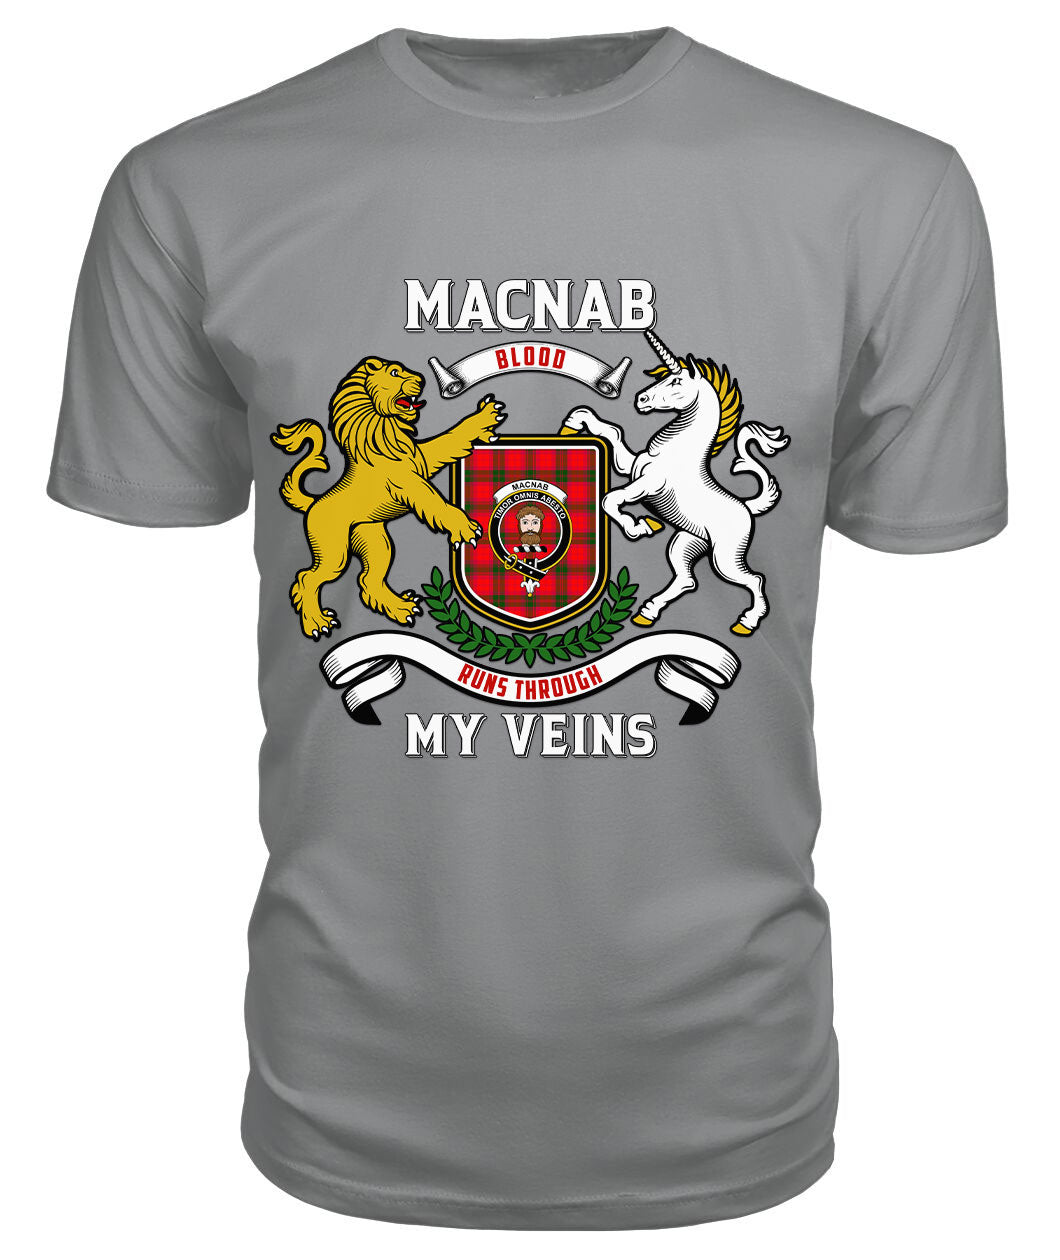 MacNab Modern Tartan Crest 2D T-shirt - Blood Runs Through My Veins Style